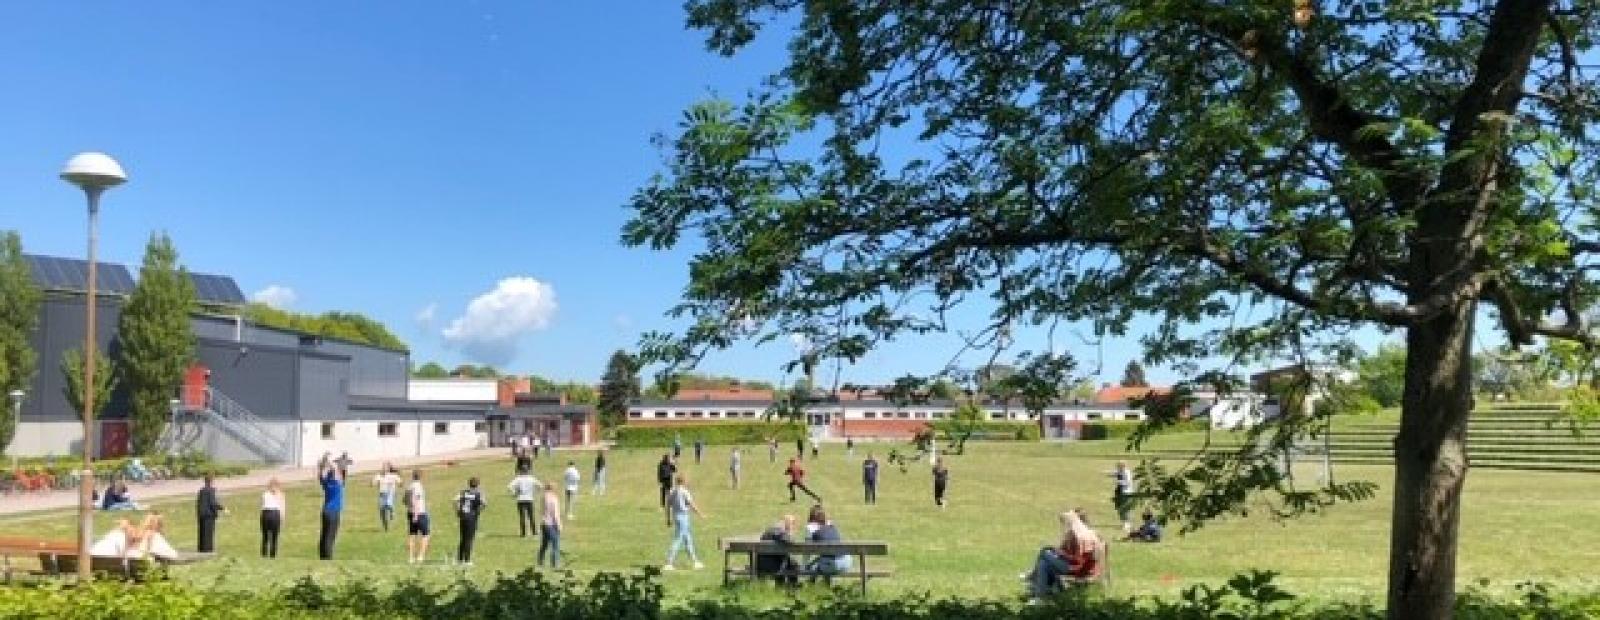 Utemiljö på en skola med en stor gräsplan, blå himmel och ett stort träd i förgrunden